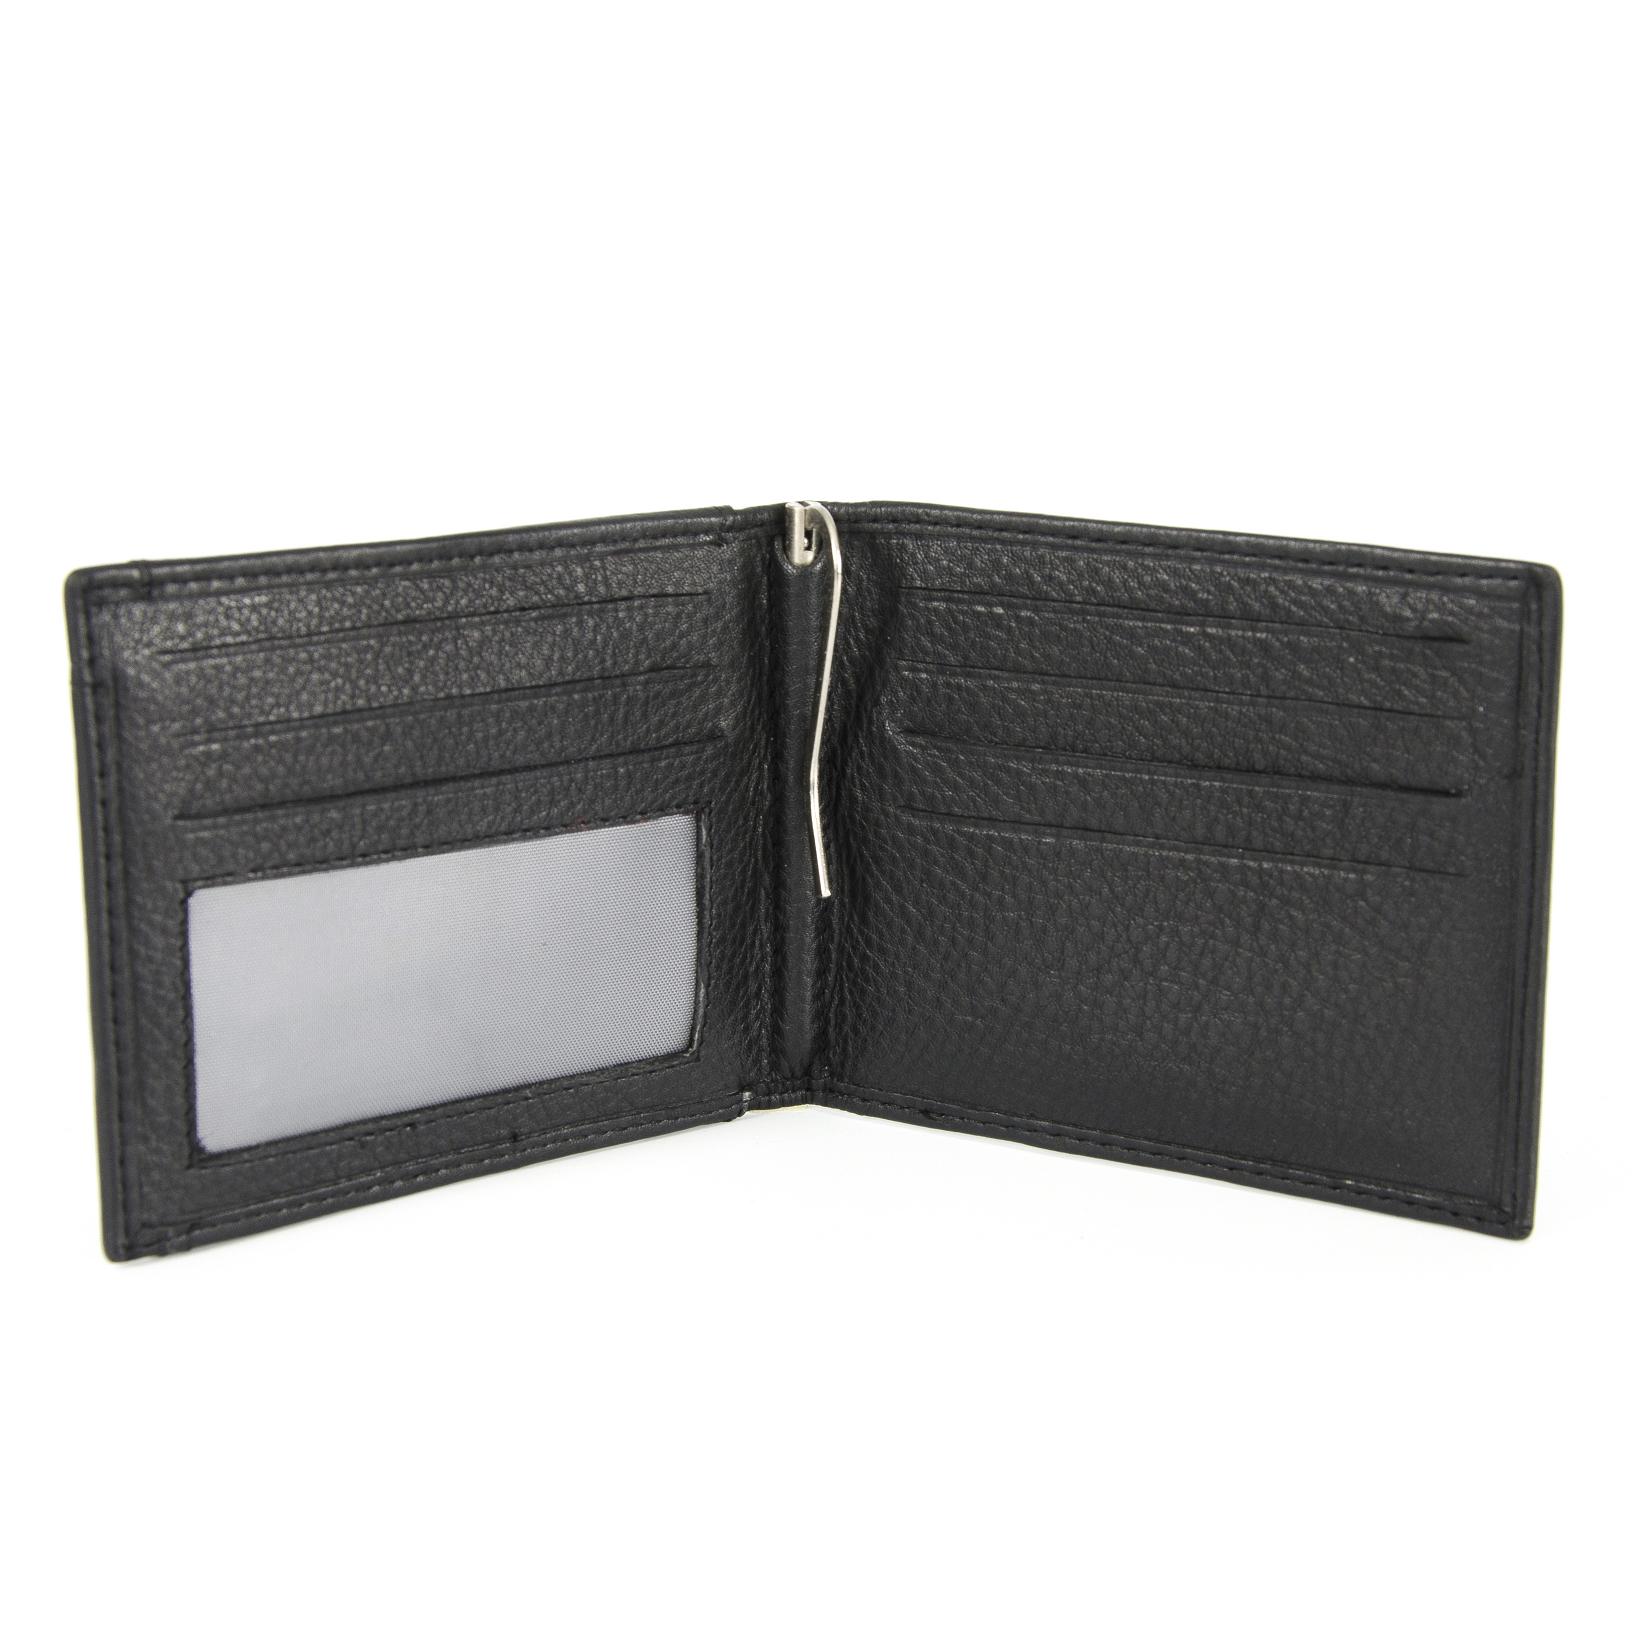 Moška denarnica s sponko- v črni barvi- slikana znotraj